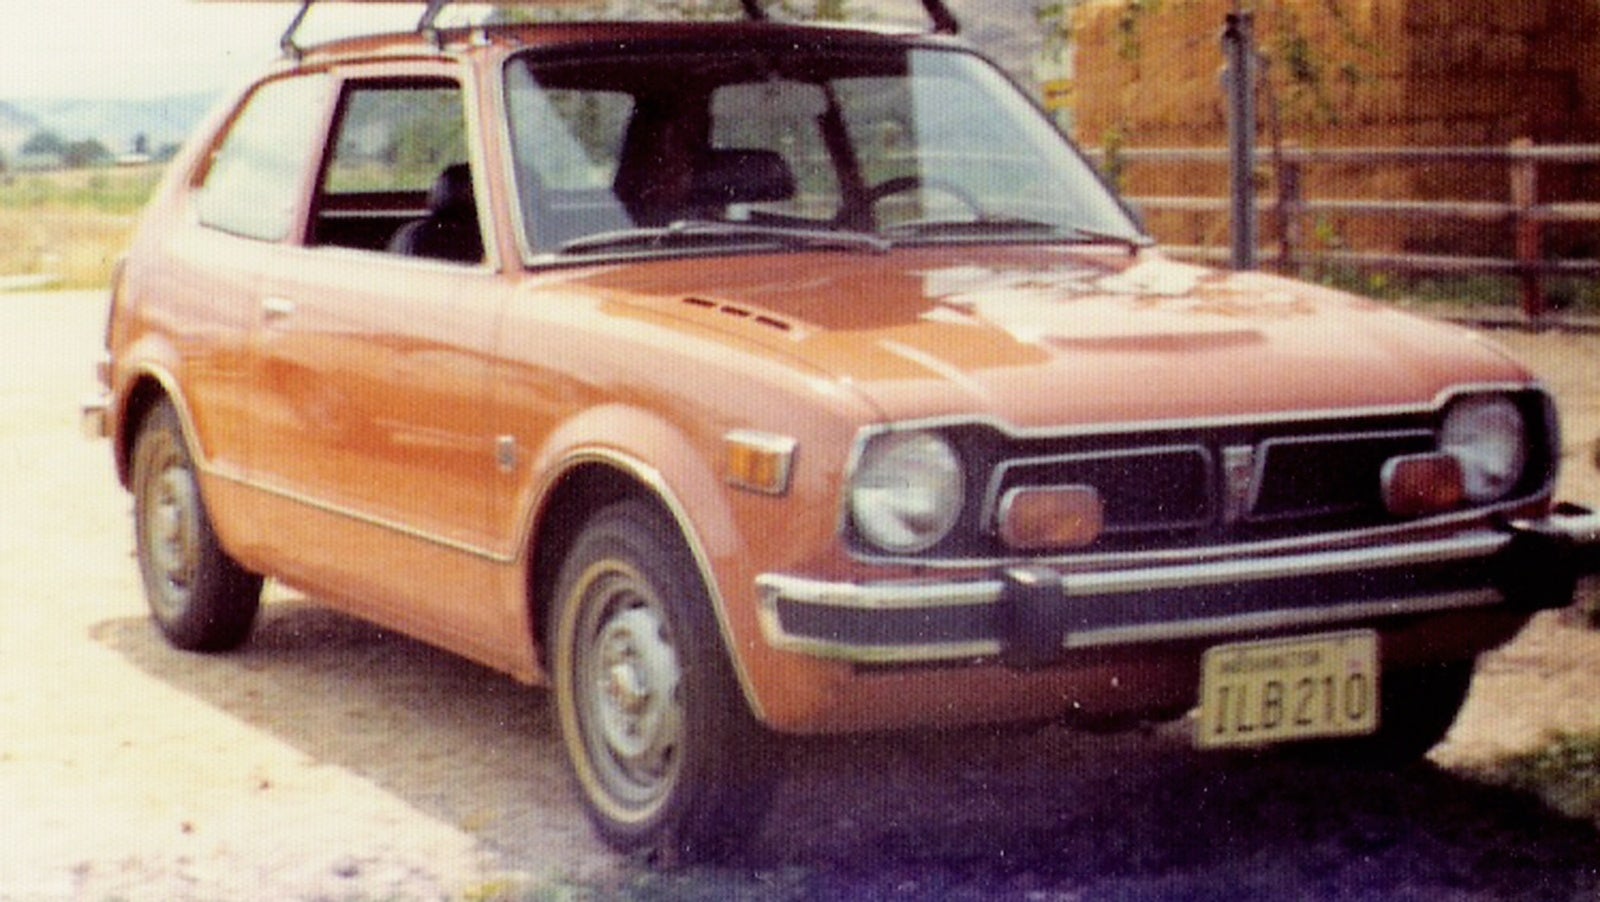 1974 Honda Civic - Pictures - CarGurus